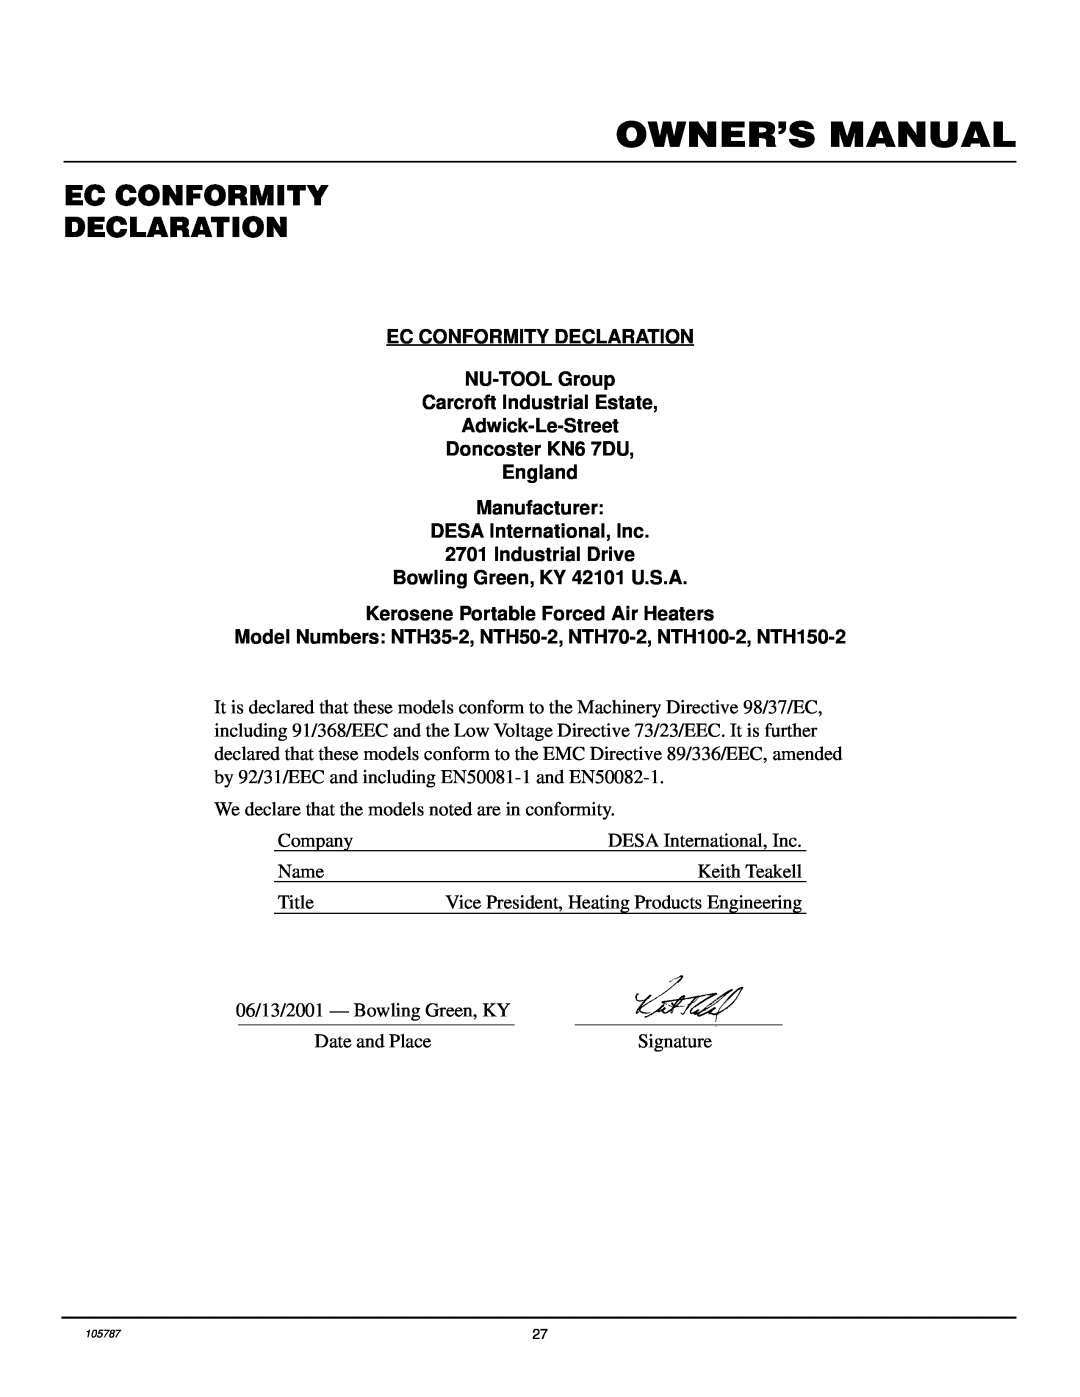 Desa NTH100-2, NTH50-2, NTH35-2, NTH150-2, NTH70-2 owner manual Ec Conformity Declaration 